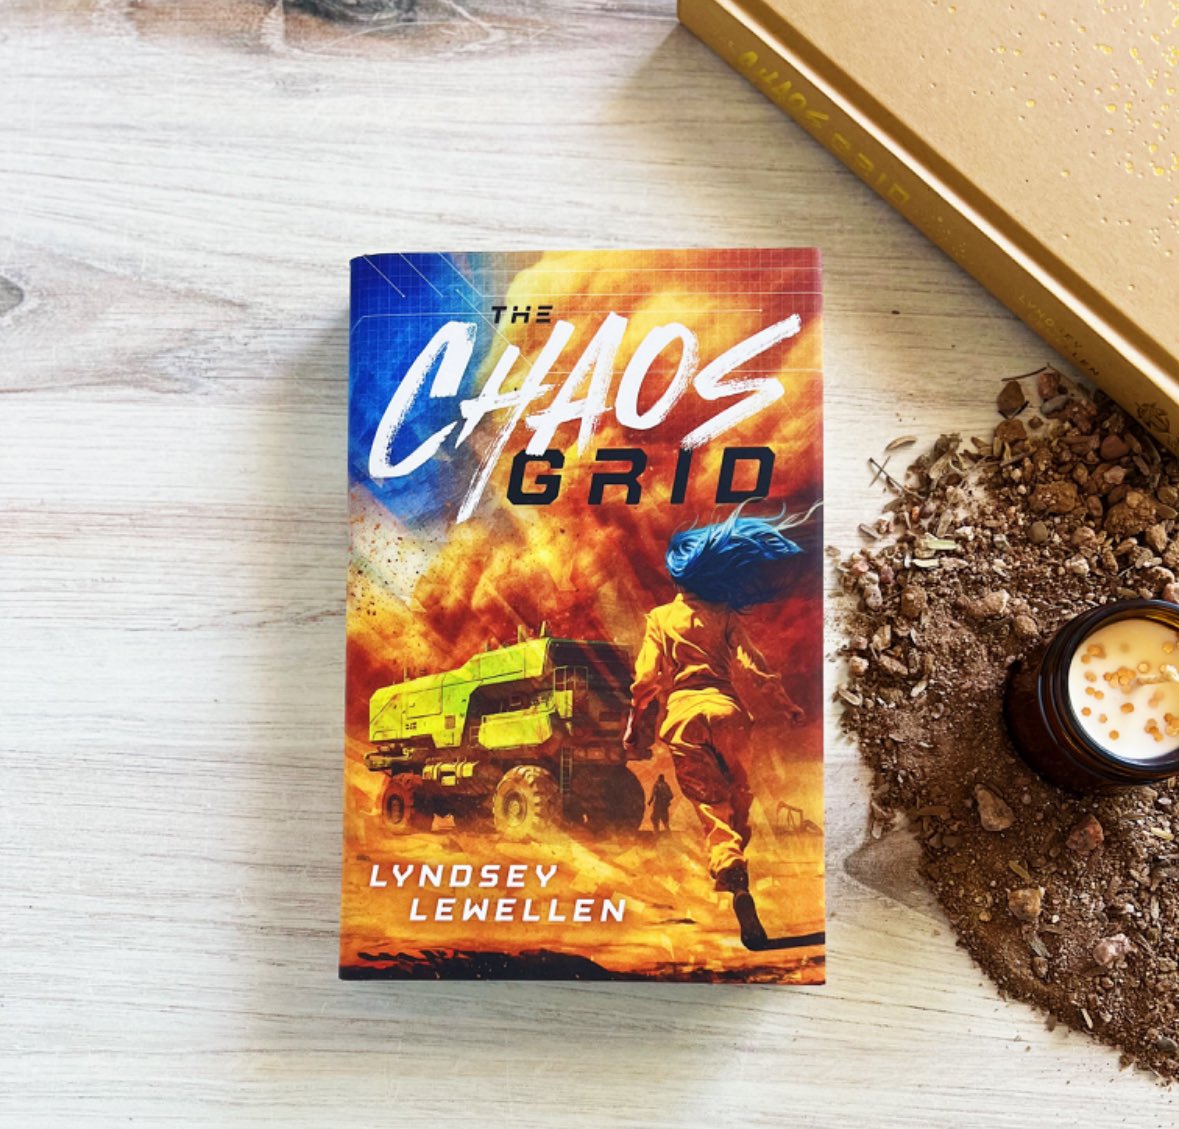 New Release!!! Here it is! The Chaos Grid by Lyndsey Lewellen.

#yafiction #dystopian #NewRelease

amazon.com/Chaos-Grid-Lyn…